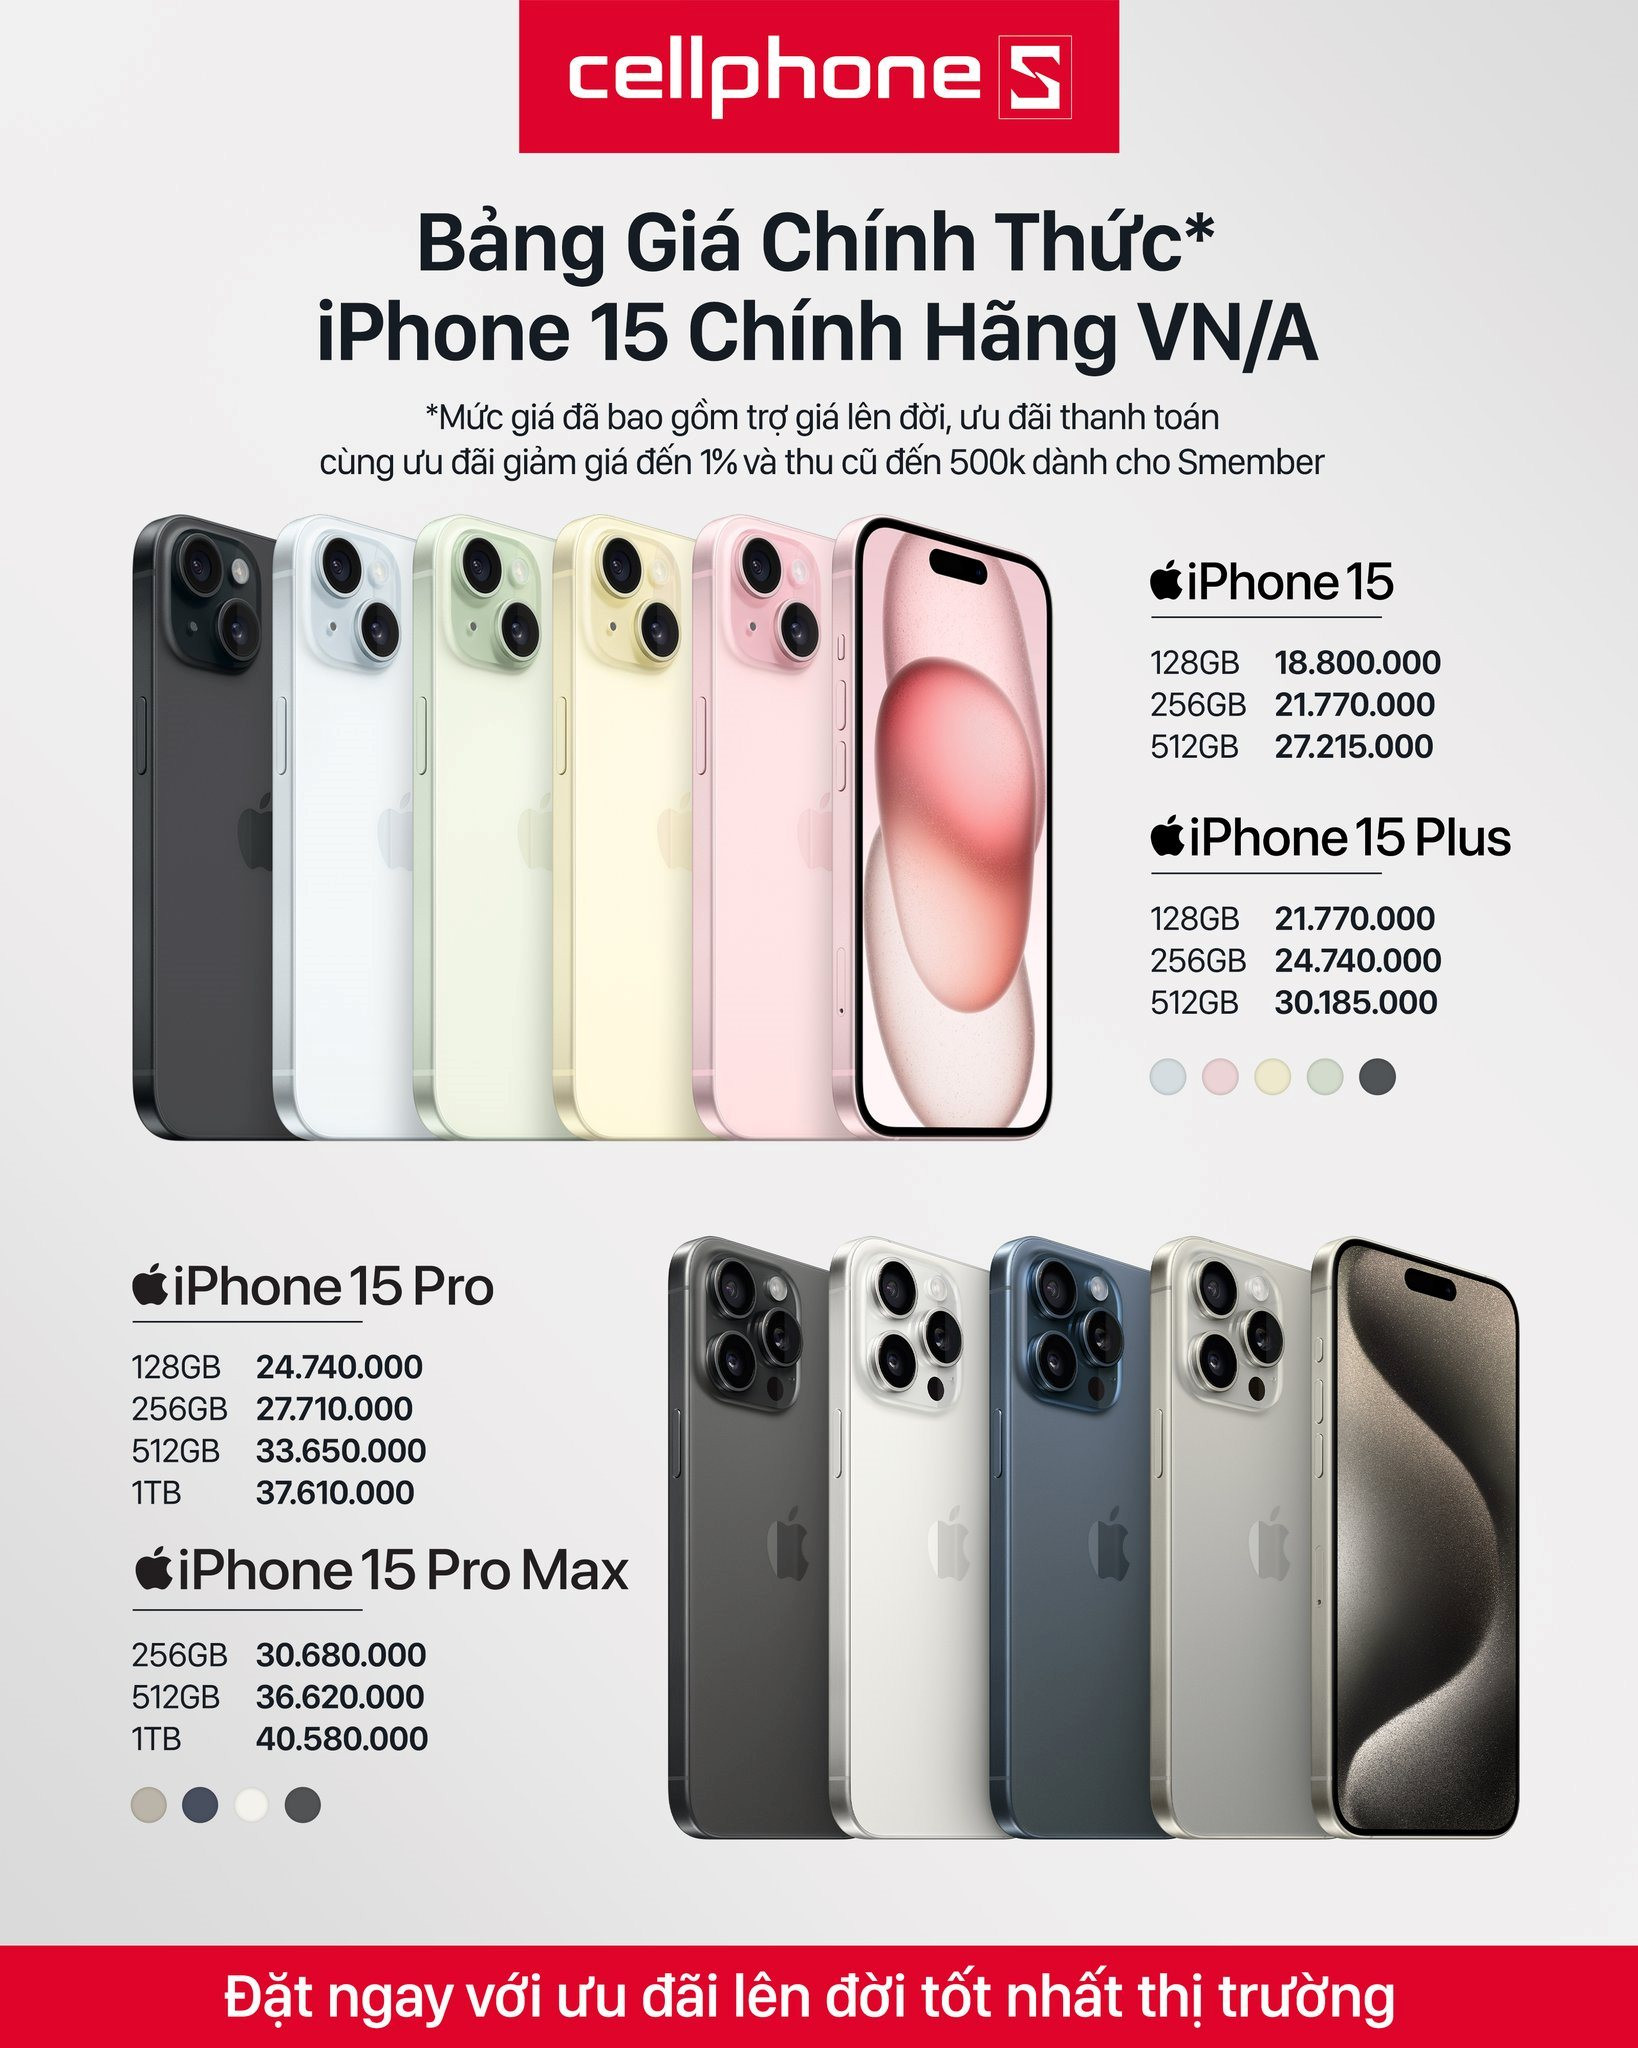 iPhone 15 series chính thức mở đặt trước, các hệ thống bán lẻ tại Việt Nam lại lao vào 'cuộc chiến giá rẻ' - Ảnh 3.